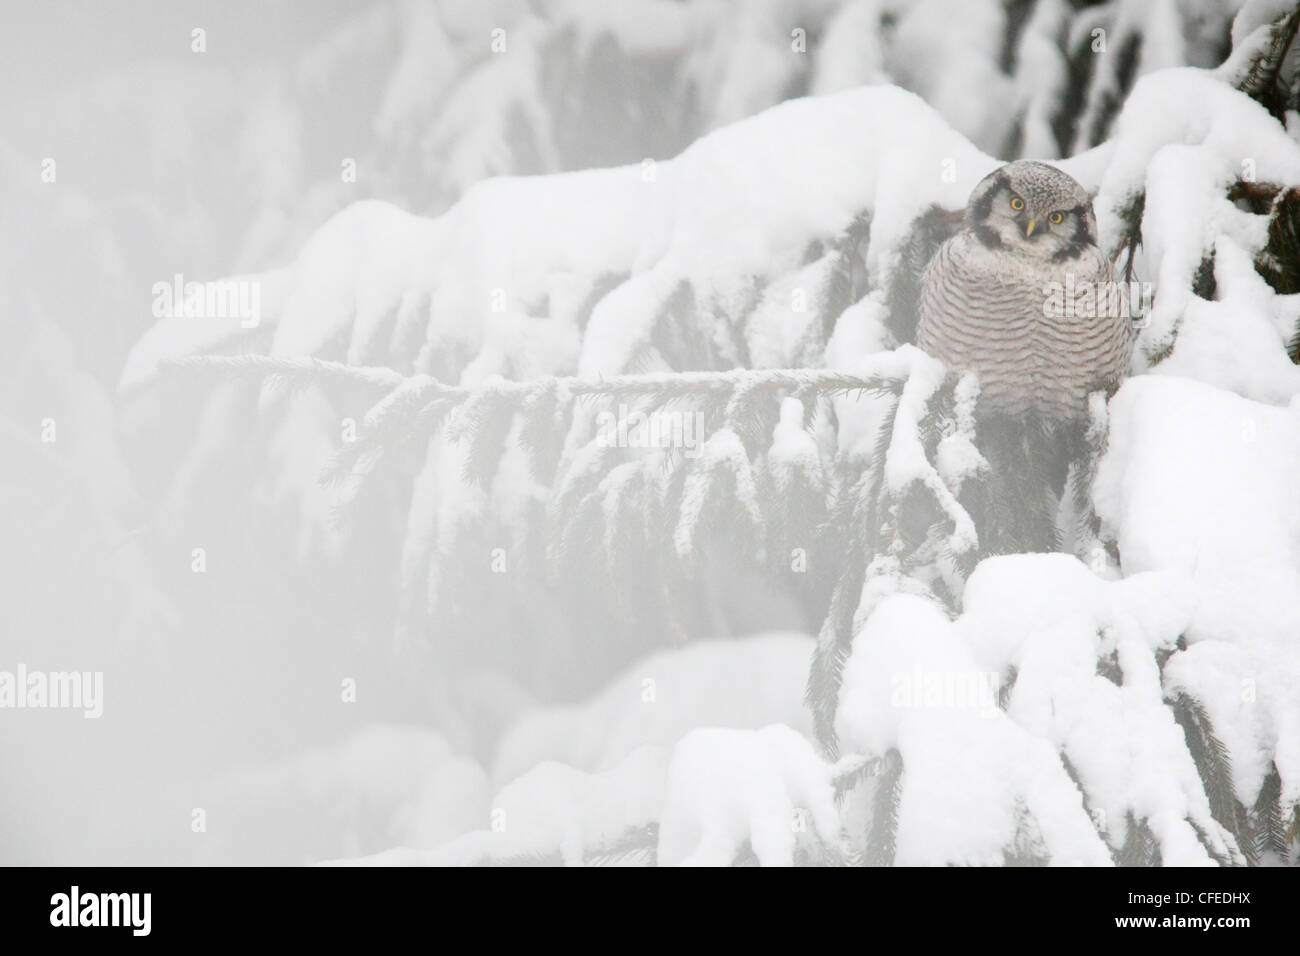 Wilden nördlichen Sperbereule thront über Schnee bedeckte Tanne. Stockfoto